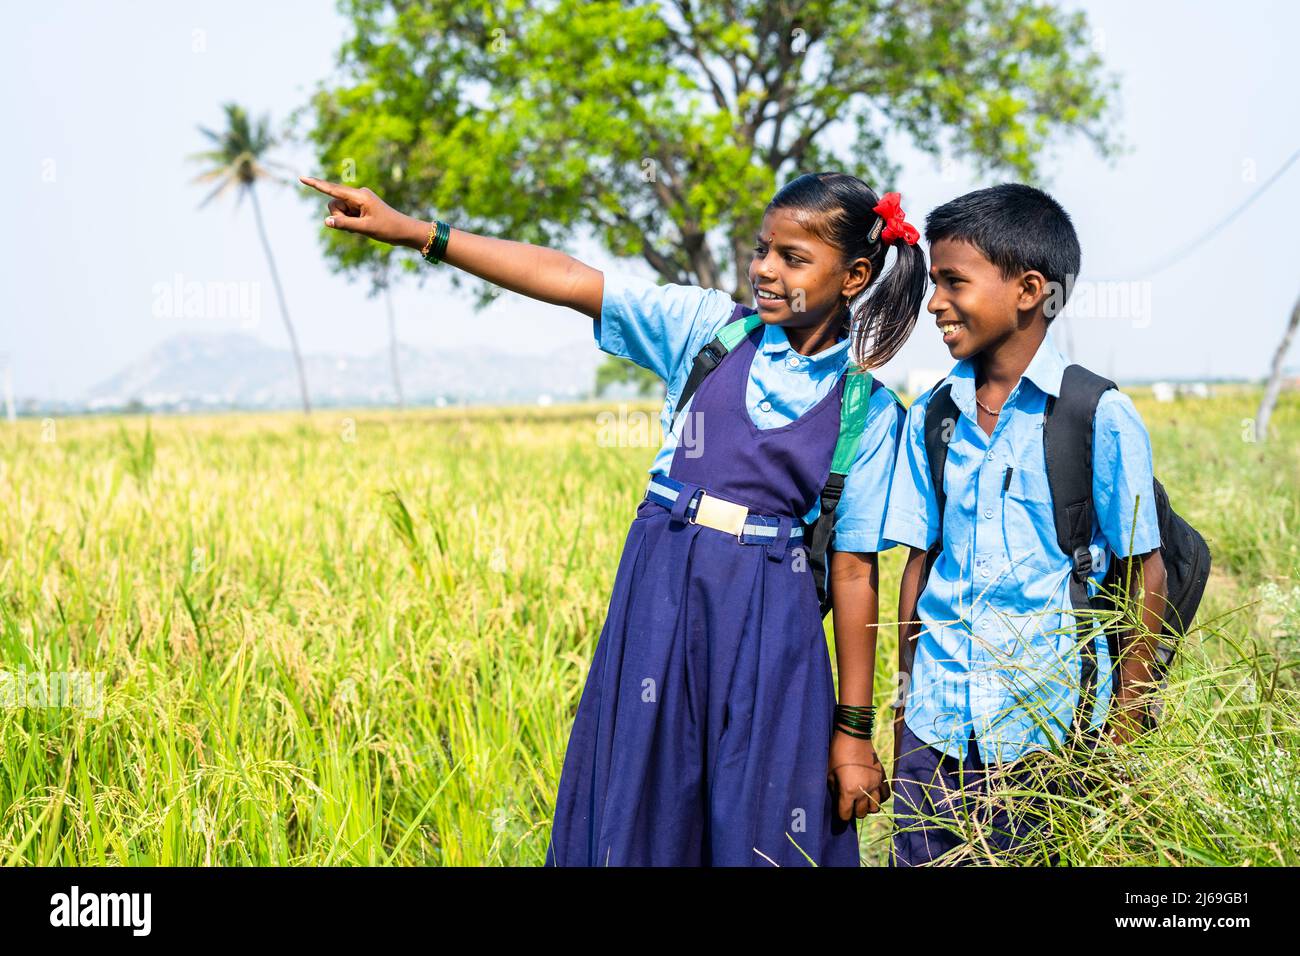 Teenager-Geschwister mit Schulkleidung gehen auf Reisfeld zur Schule und schauen sich die Natur an - Konzept von Bildung, Armut, Dorfleben Stockfoto